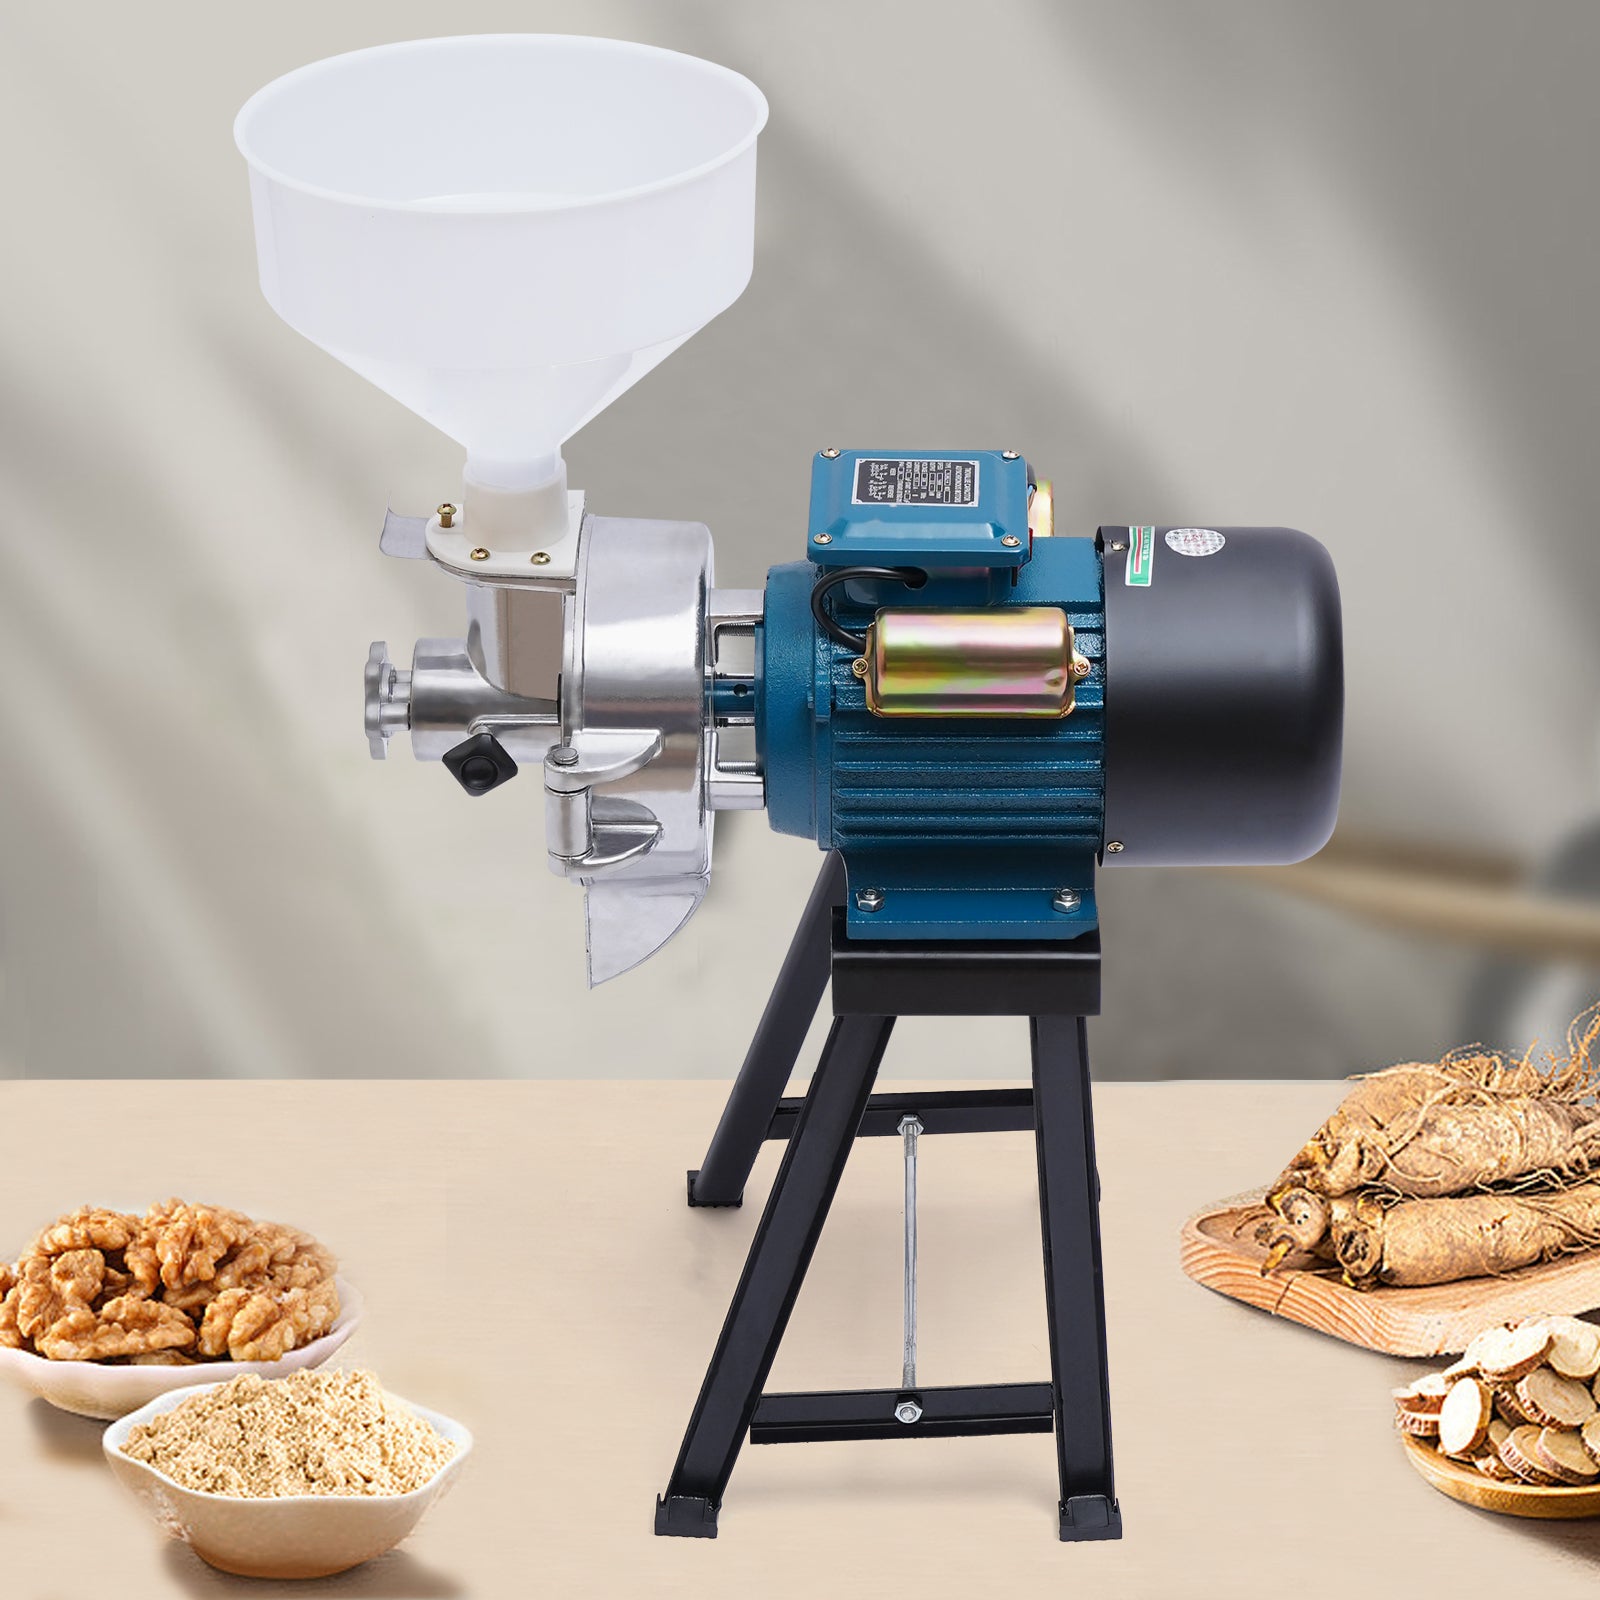 2200W macinino Elettrico, per cereal a secco e bagnato dry flour mill cereals grinder, con imbuto per gran, per grano, riso, mais, sorgo, soia.